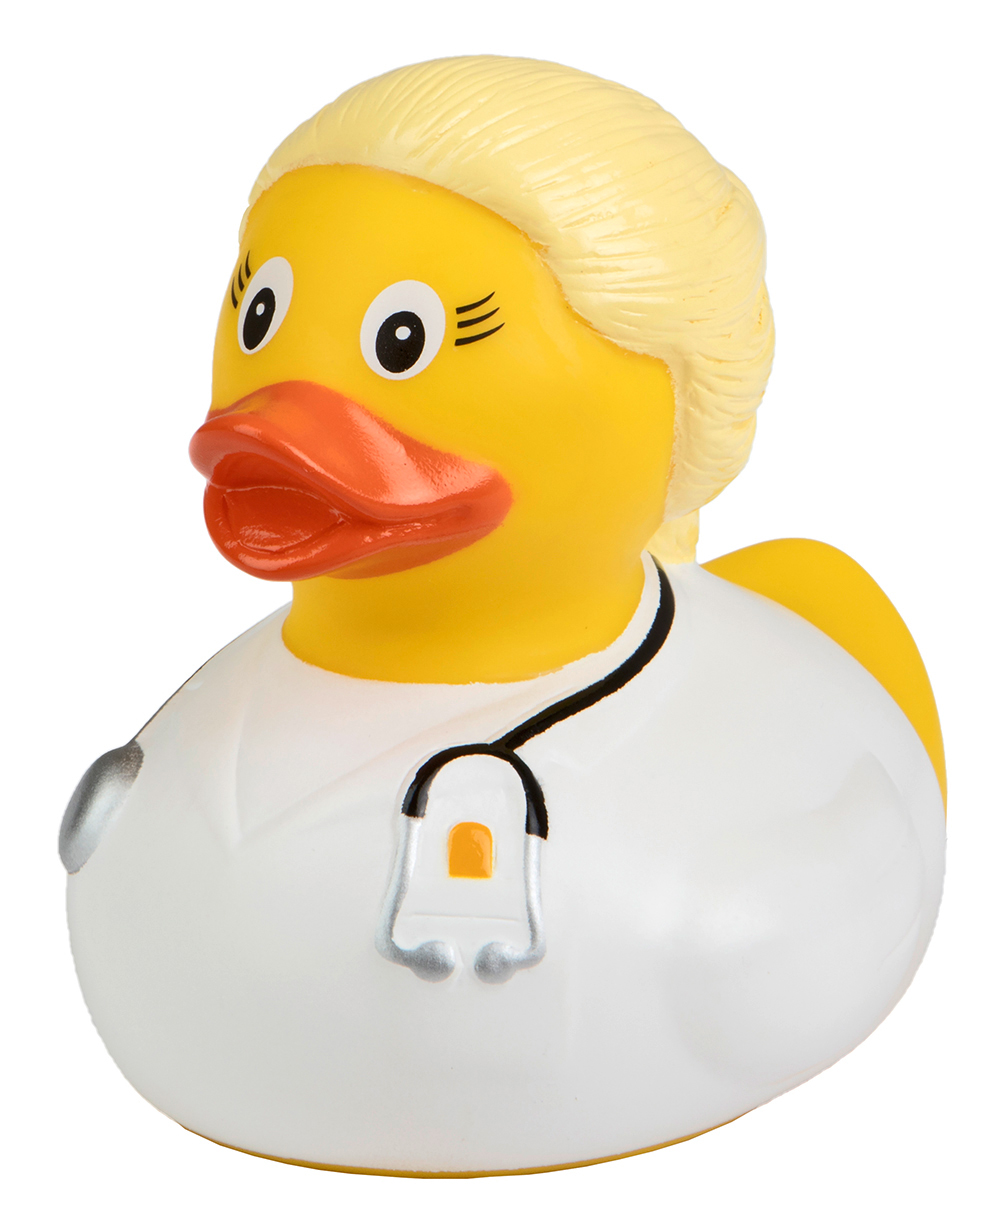 Squeaky duck doctor, blonde